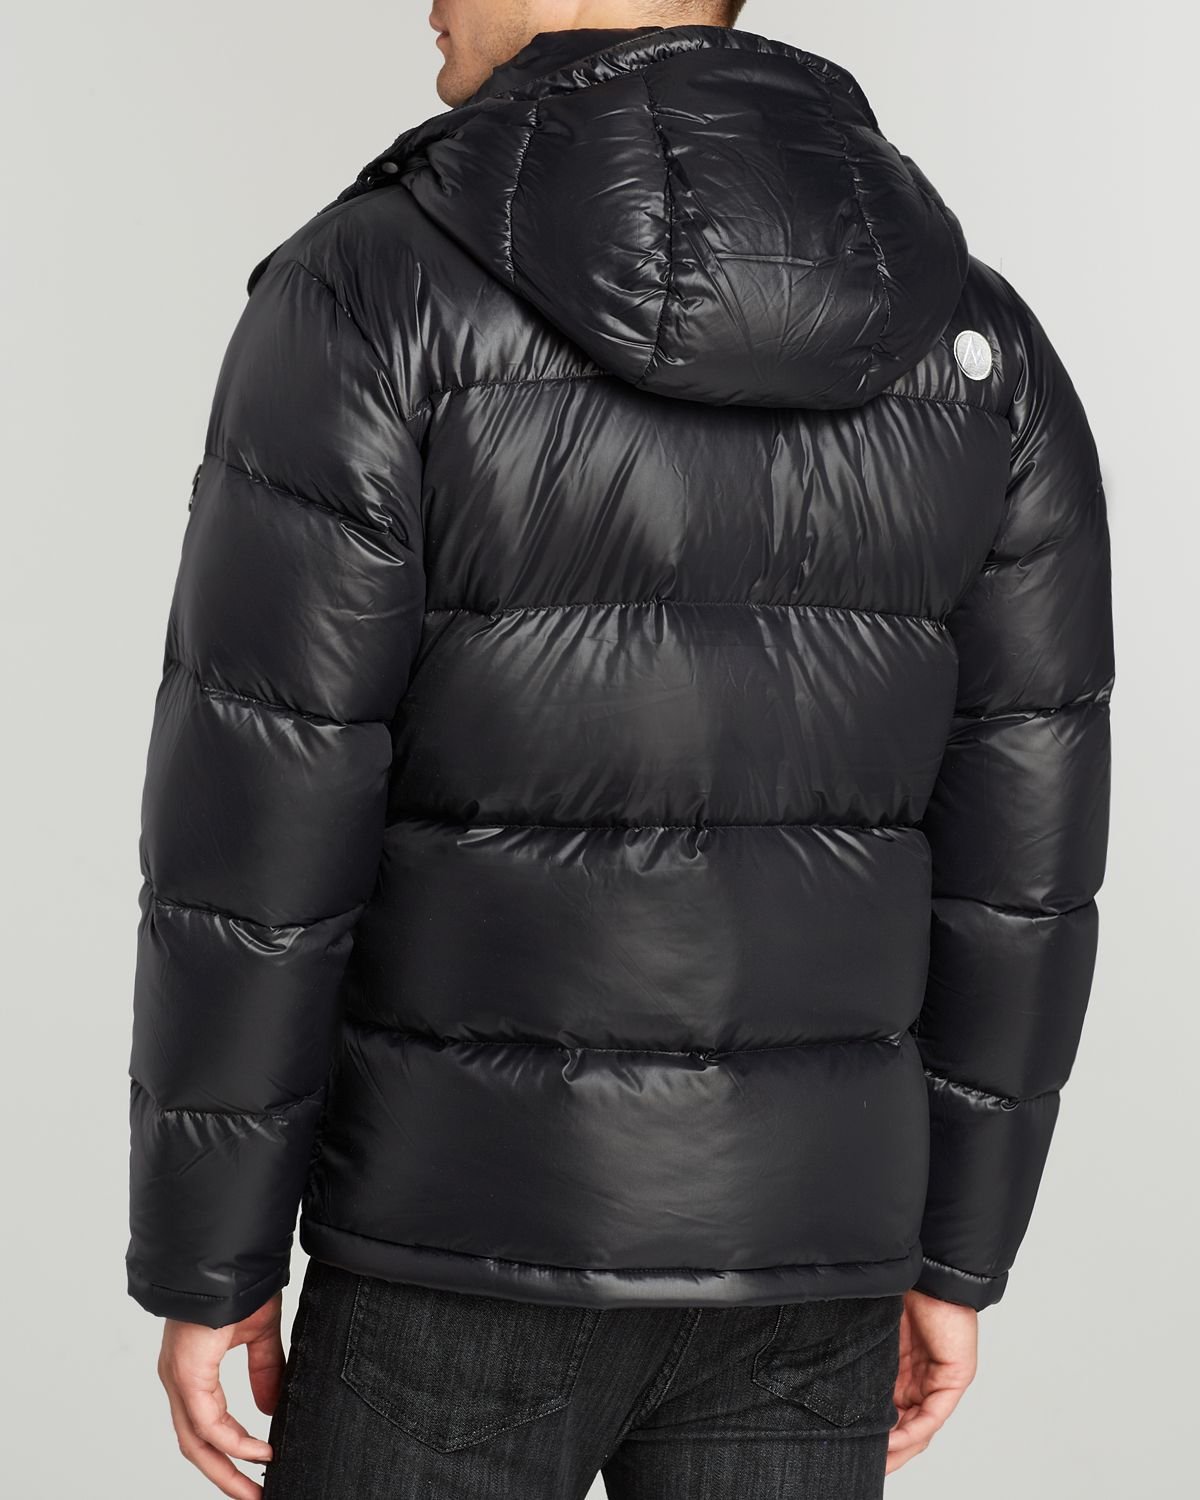 Marmot Stockholm Down Jacket in Black for Men - Lyst